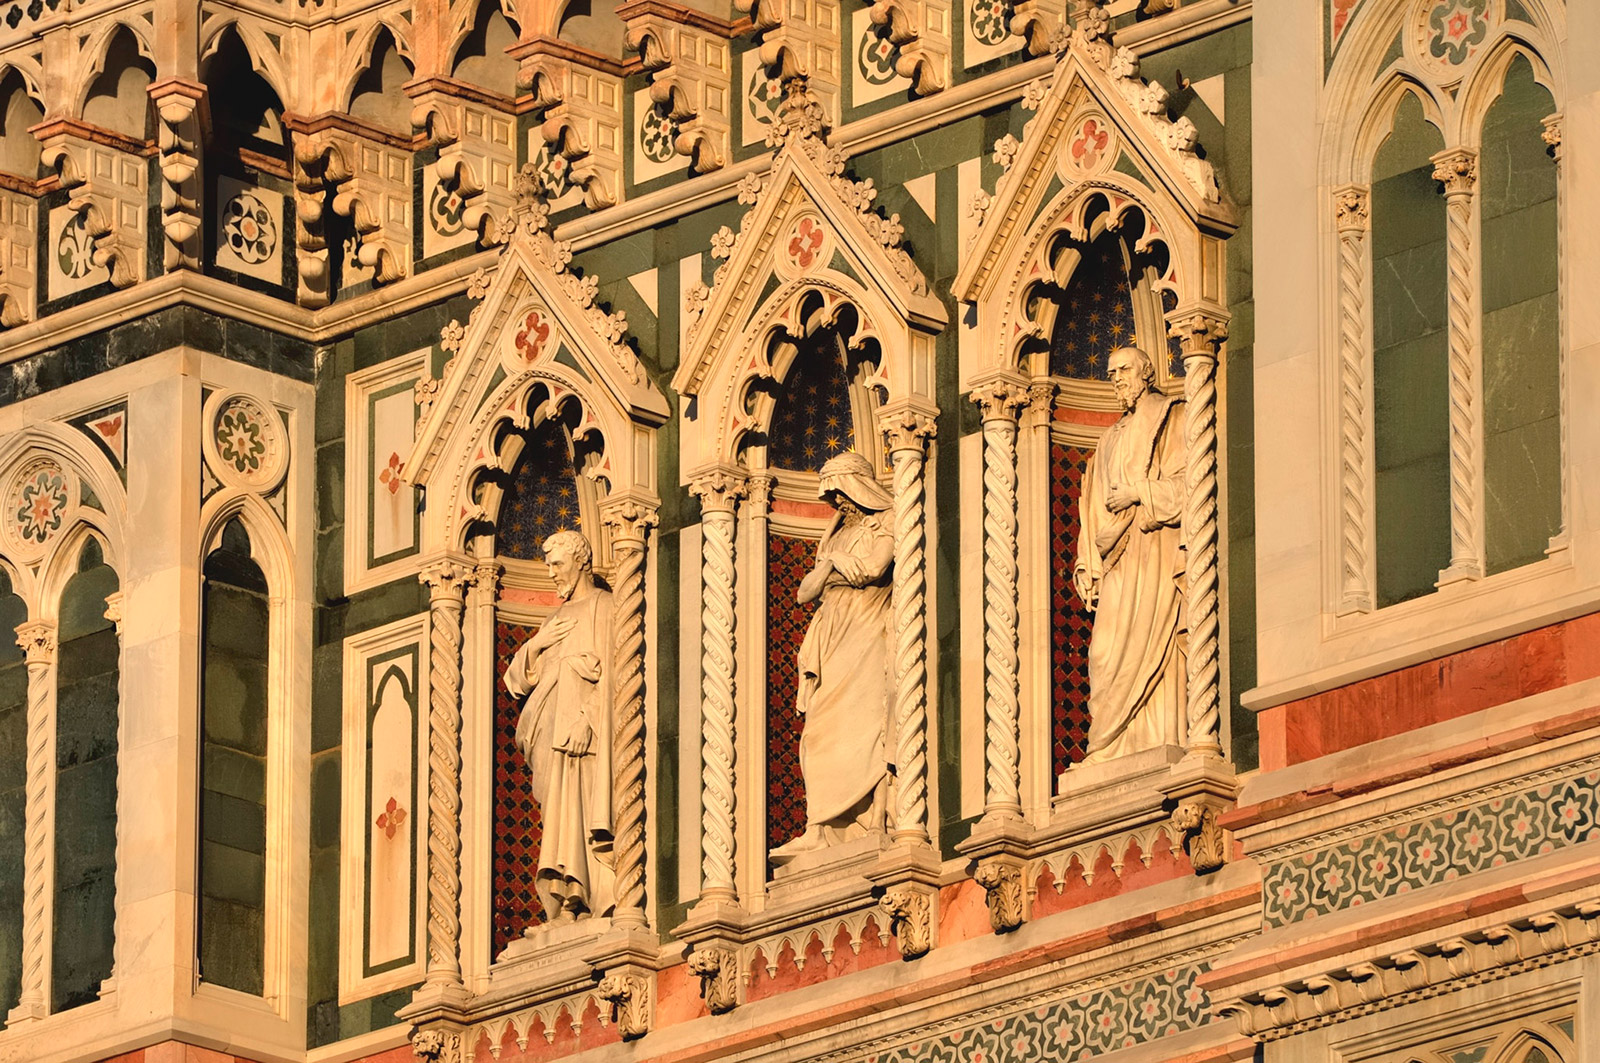 edk Polychrome marble masterwork Cattedrale di Santa Maria del Fiore Duomo Florence